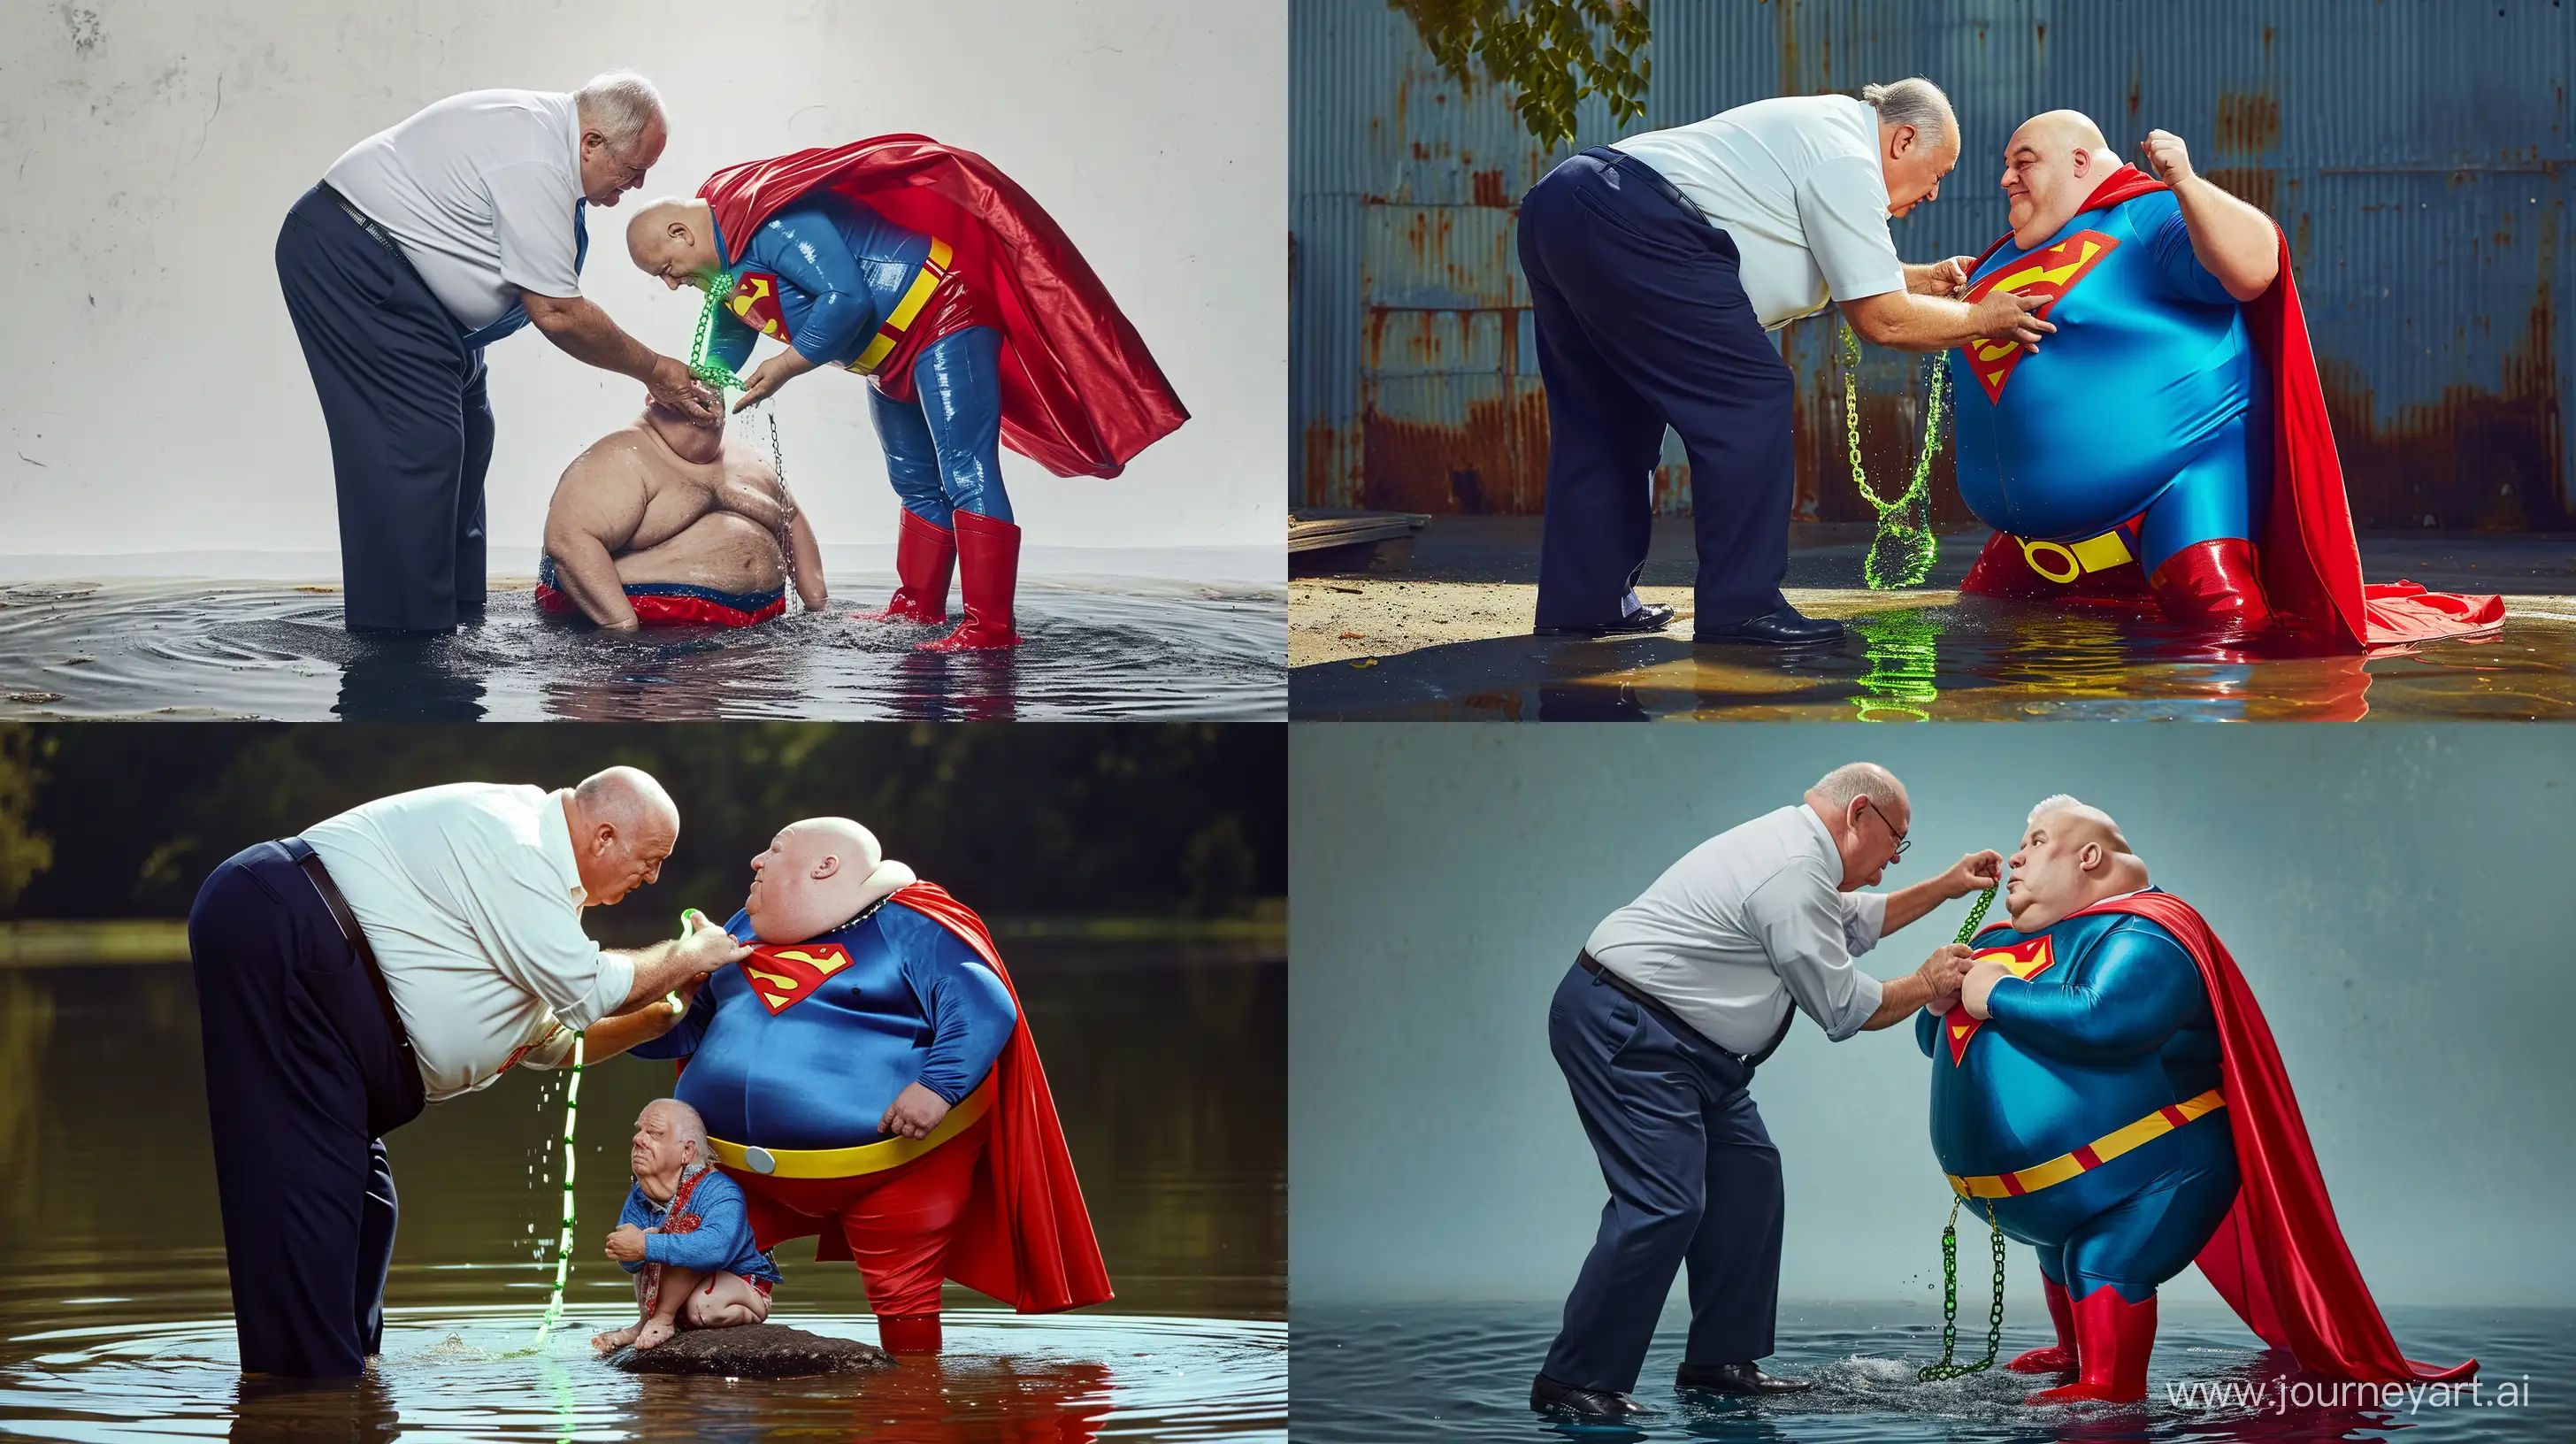 Elderly-Superhero-Submersion-Dynamic-Duo-in-Aquatic-Adventure